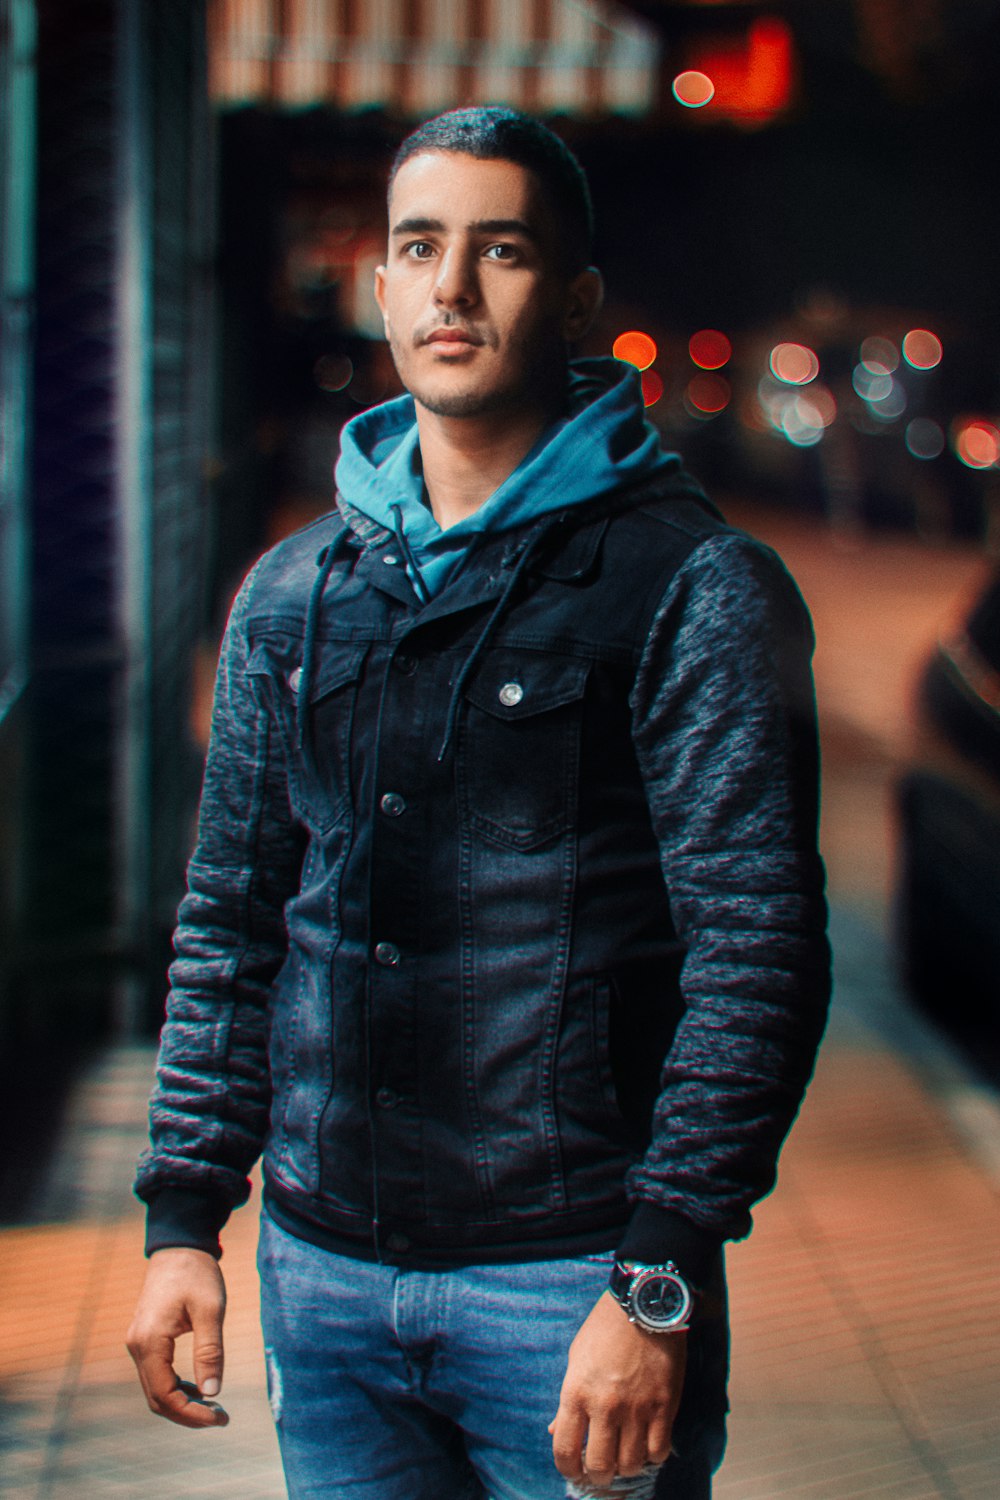 Mann in schwarzer Lederjacke steht nachts auf der Straße